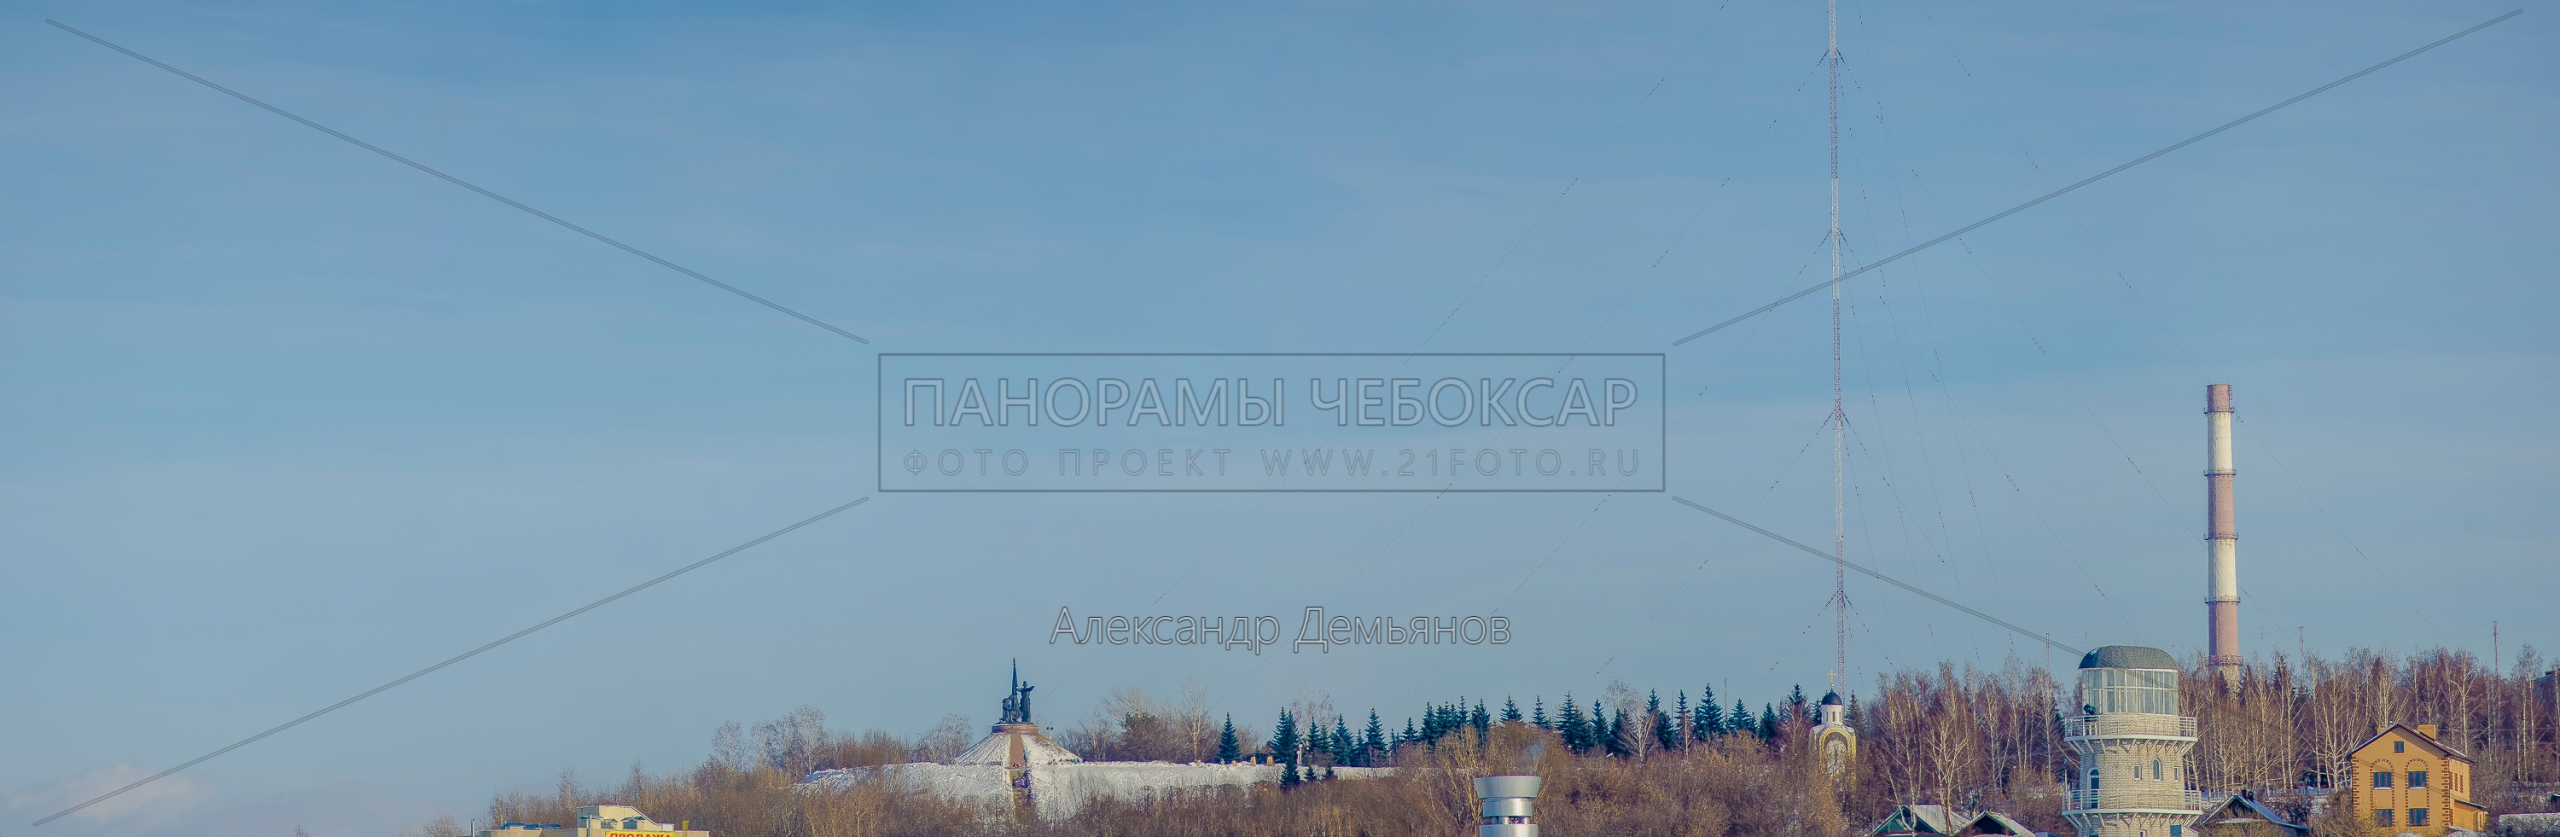 Утраченный Чебоксарский вид на парк победы Зима 2013